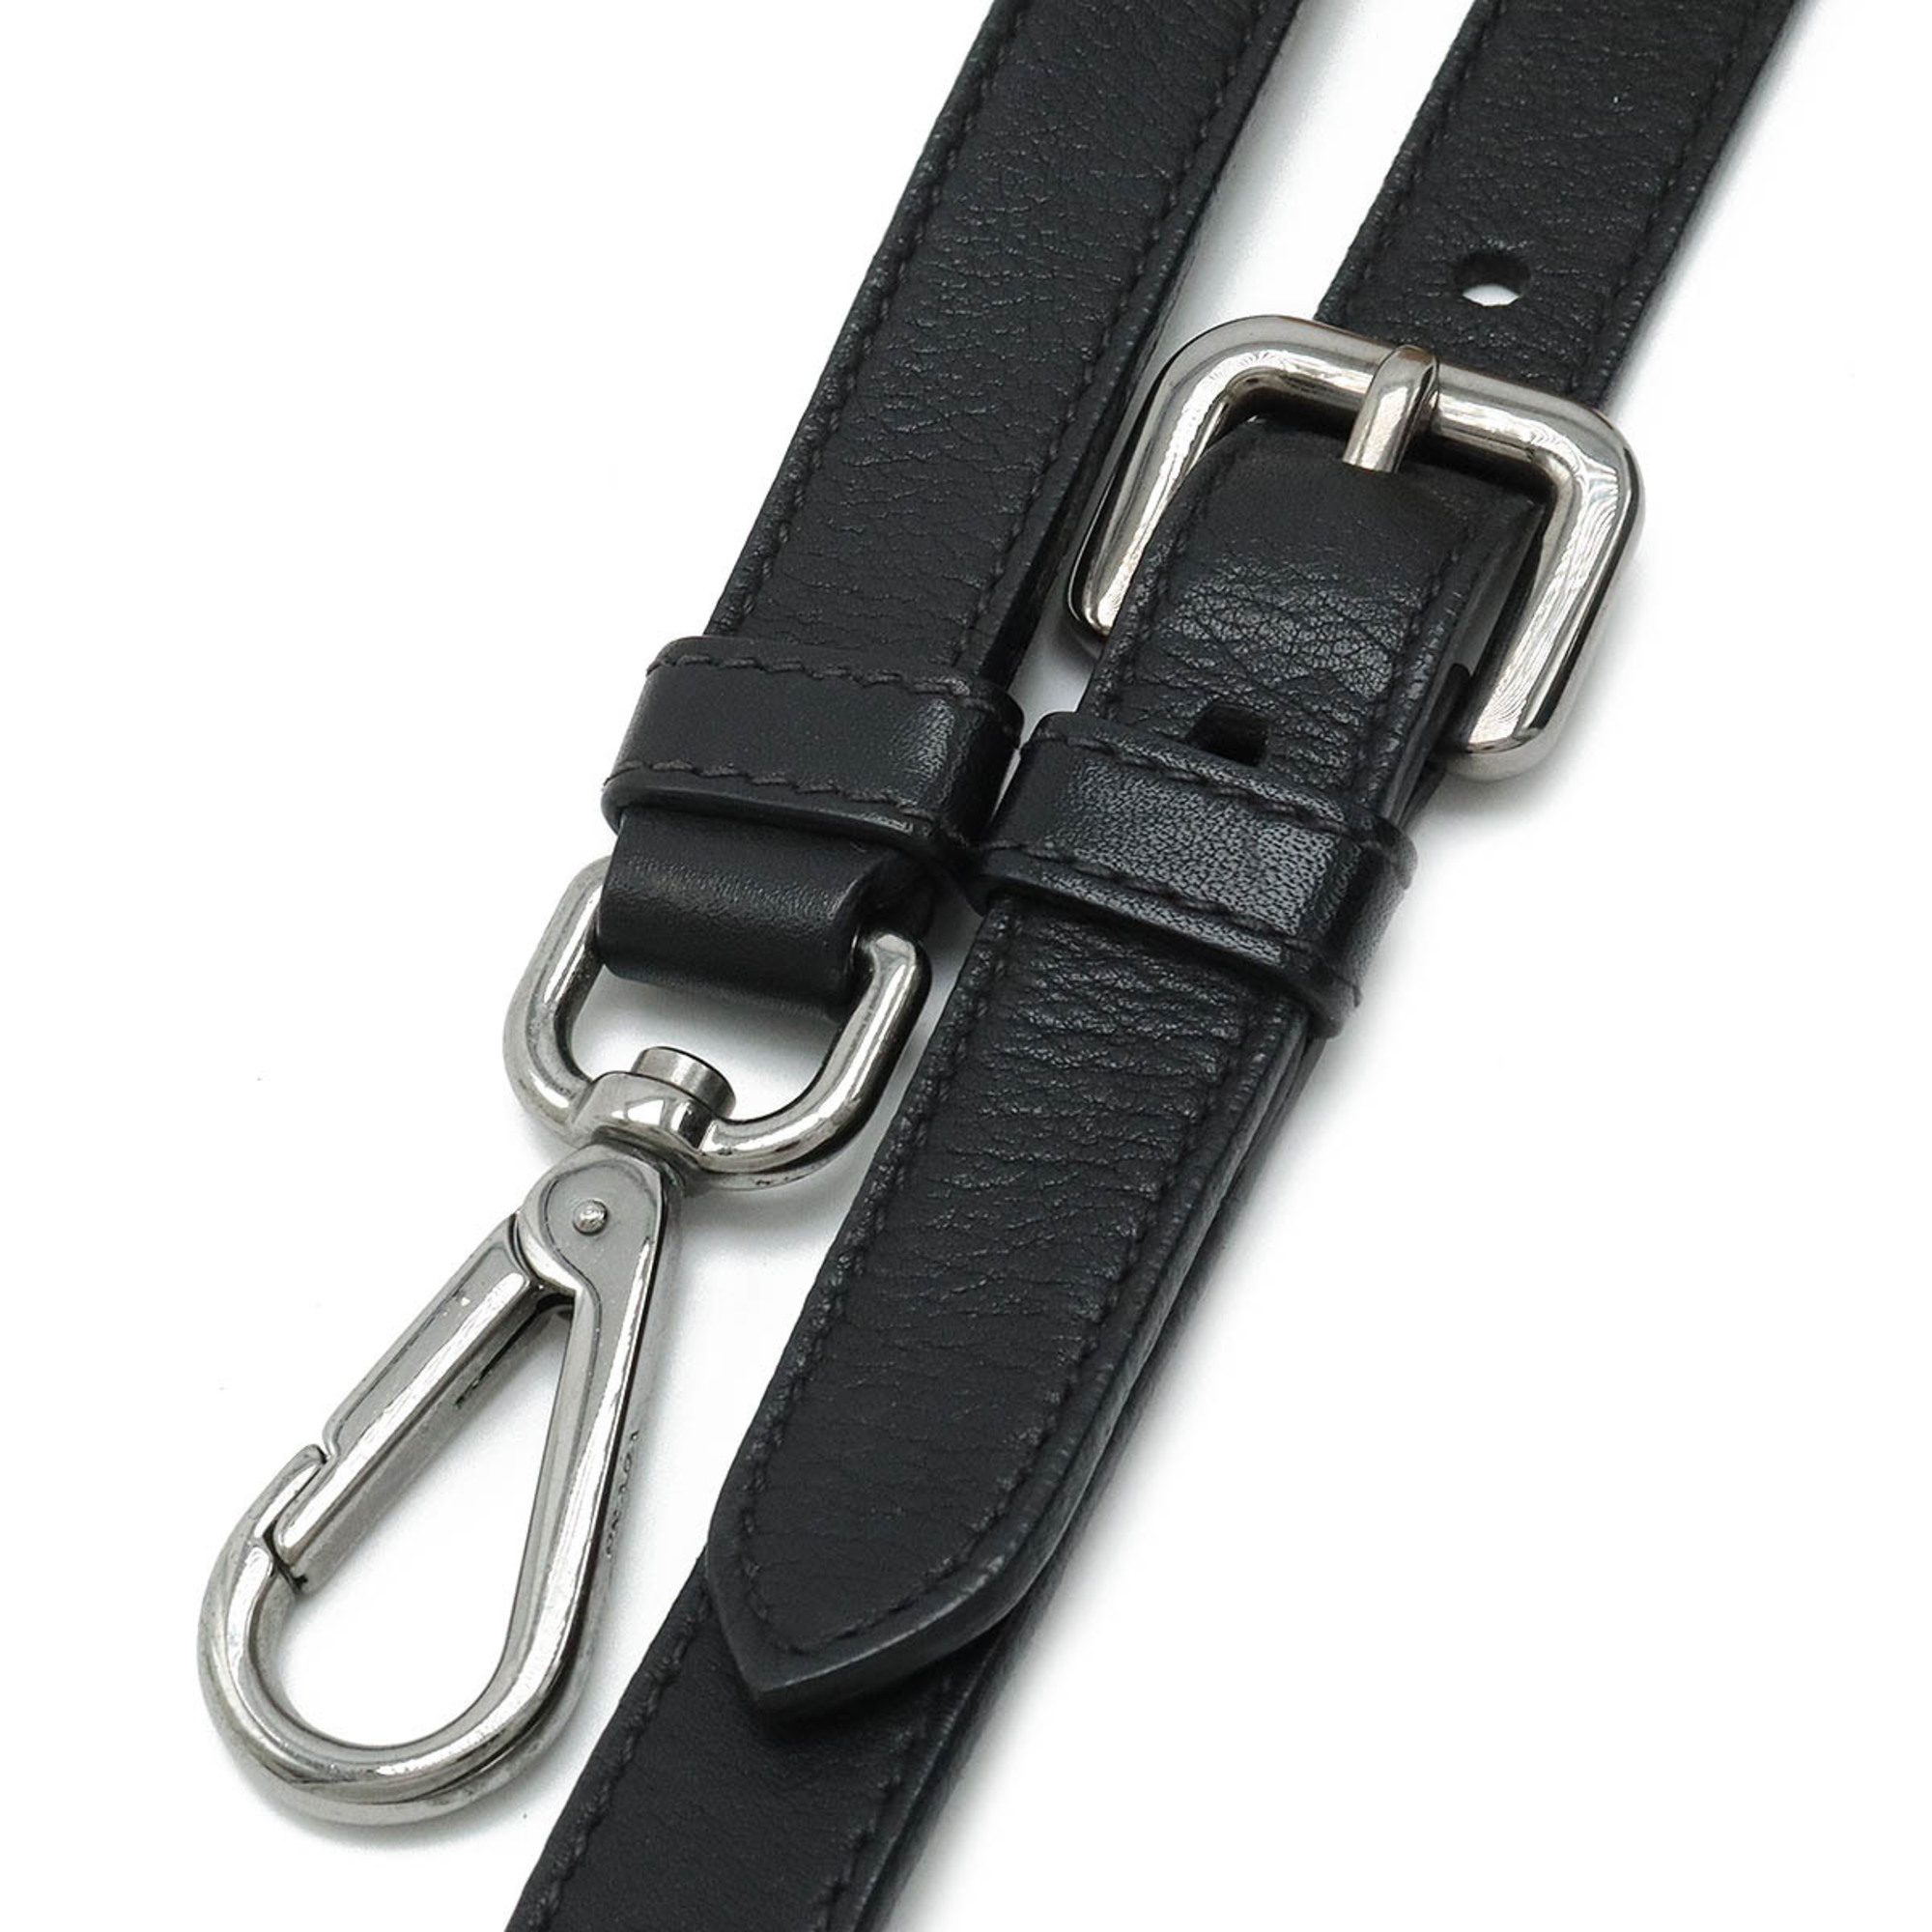 PRADA Prada Tote Bag Shoulder Nylon Leather NERO Black BN1831